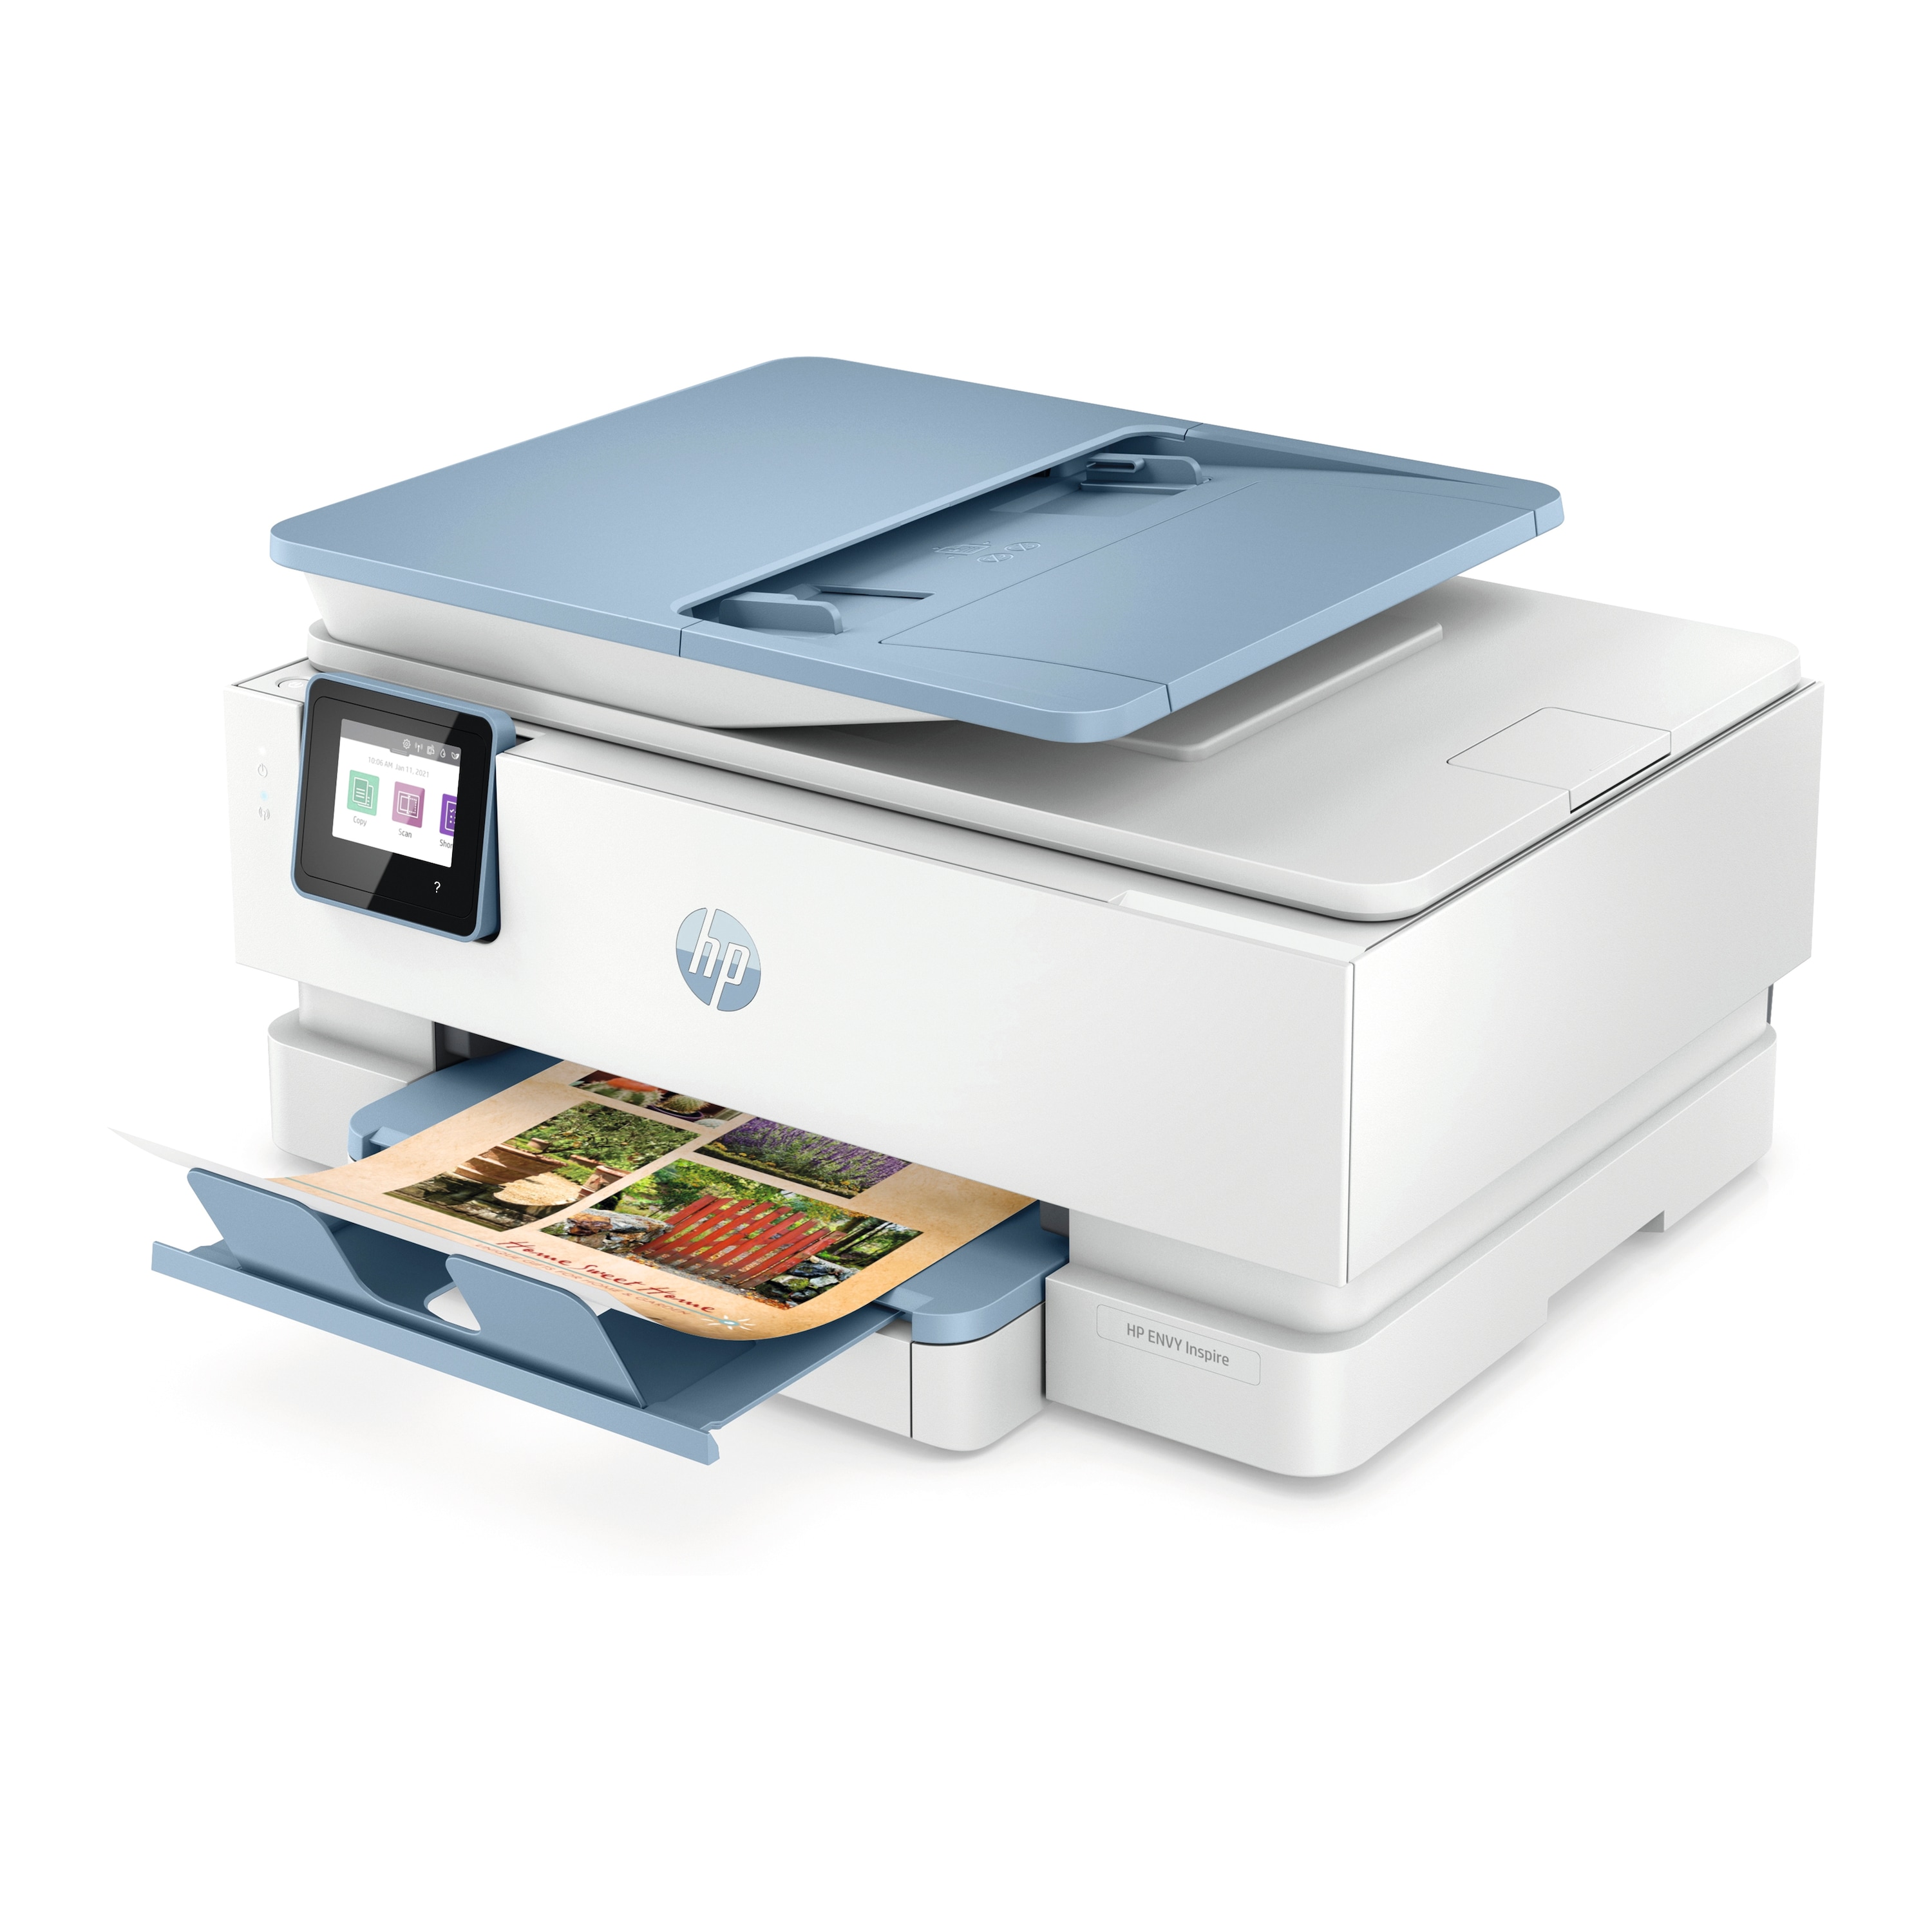 HP HP ENVY Inspire 7921e, Drucken. Scannen. Kopieren. Fotodruck, 6 Probe-Monaten HP Instant Ink mit HP+ inklusive, 35 Blatt Dokumentenzuführung und 2 Papierzuführungen